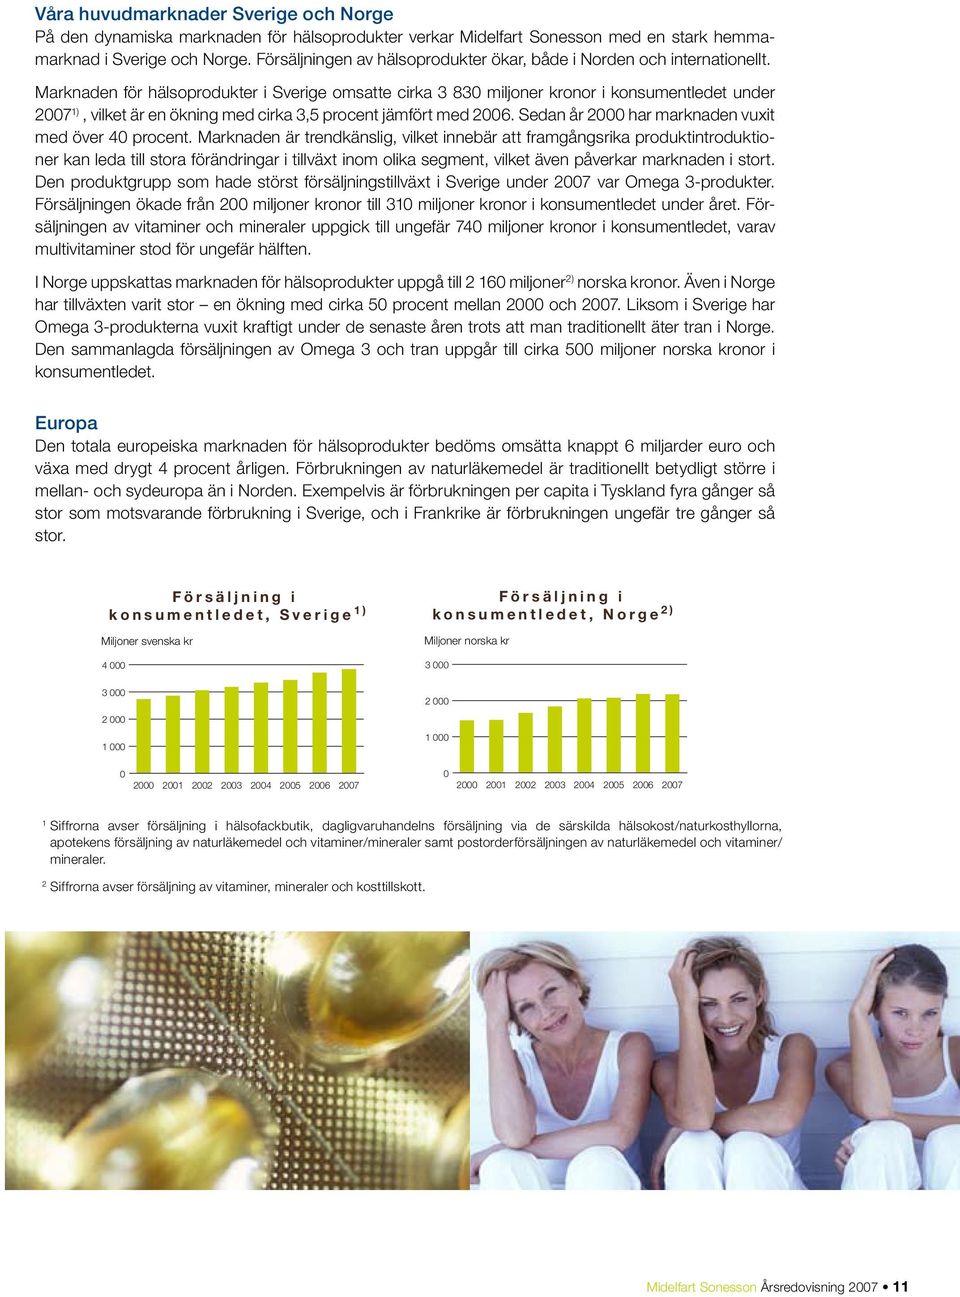 Marknaden för hälsoprodukter i Sverige omsatte cirka 3 830 miljoner kronor i konsumentledet under 2007 1), vilket är en ökning med cirka 3,5 procent jämfört med 2006.